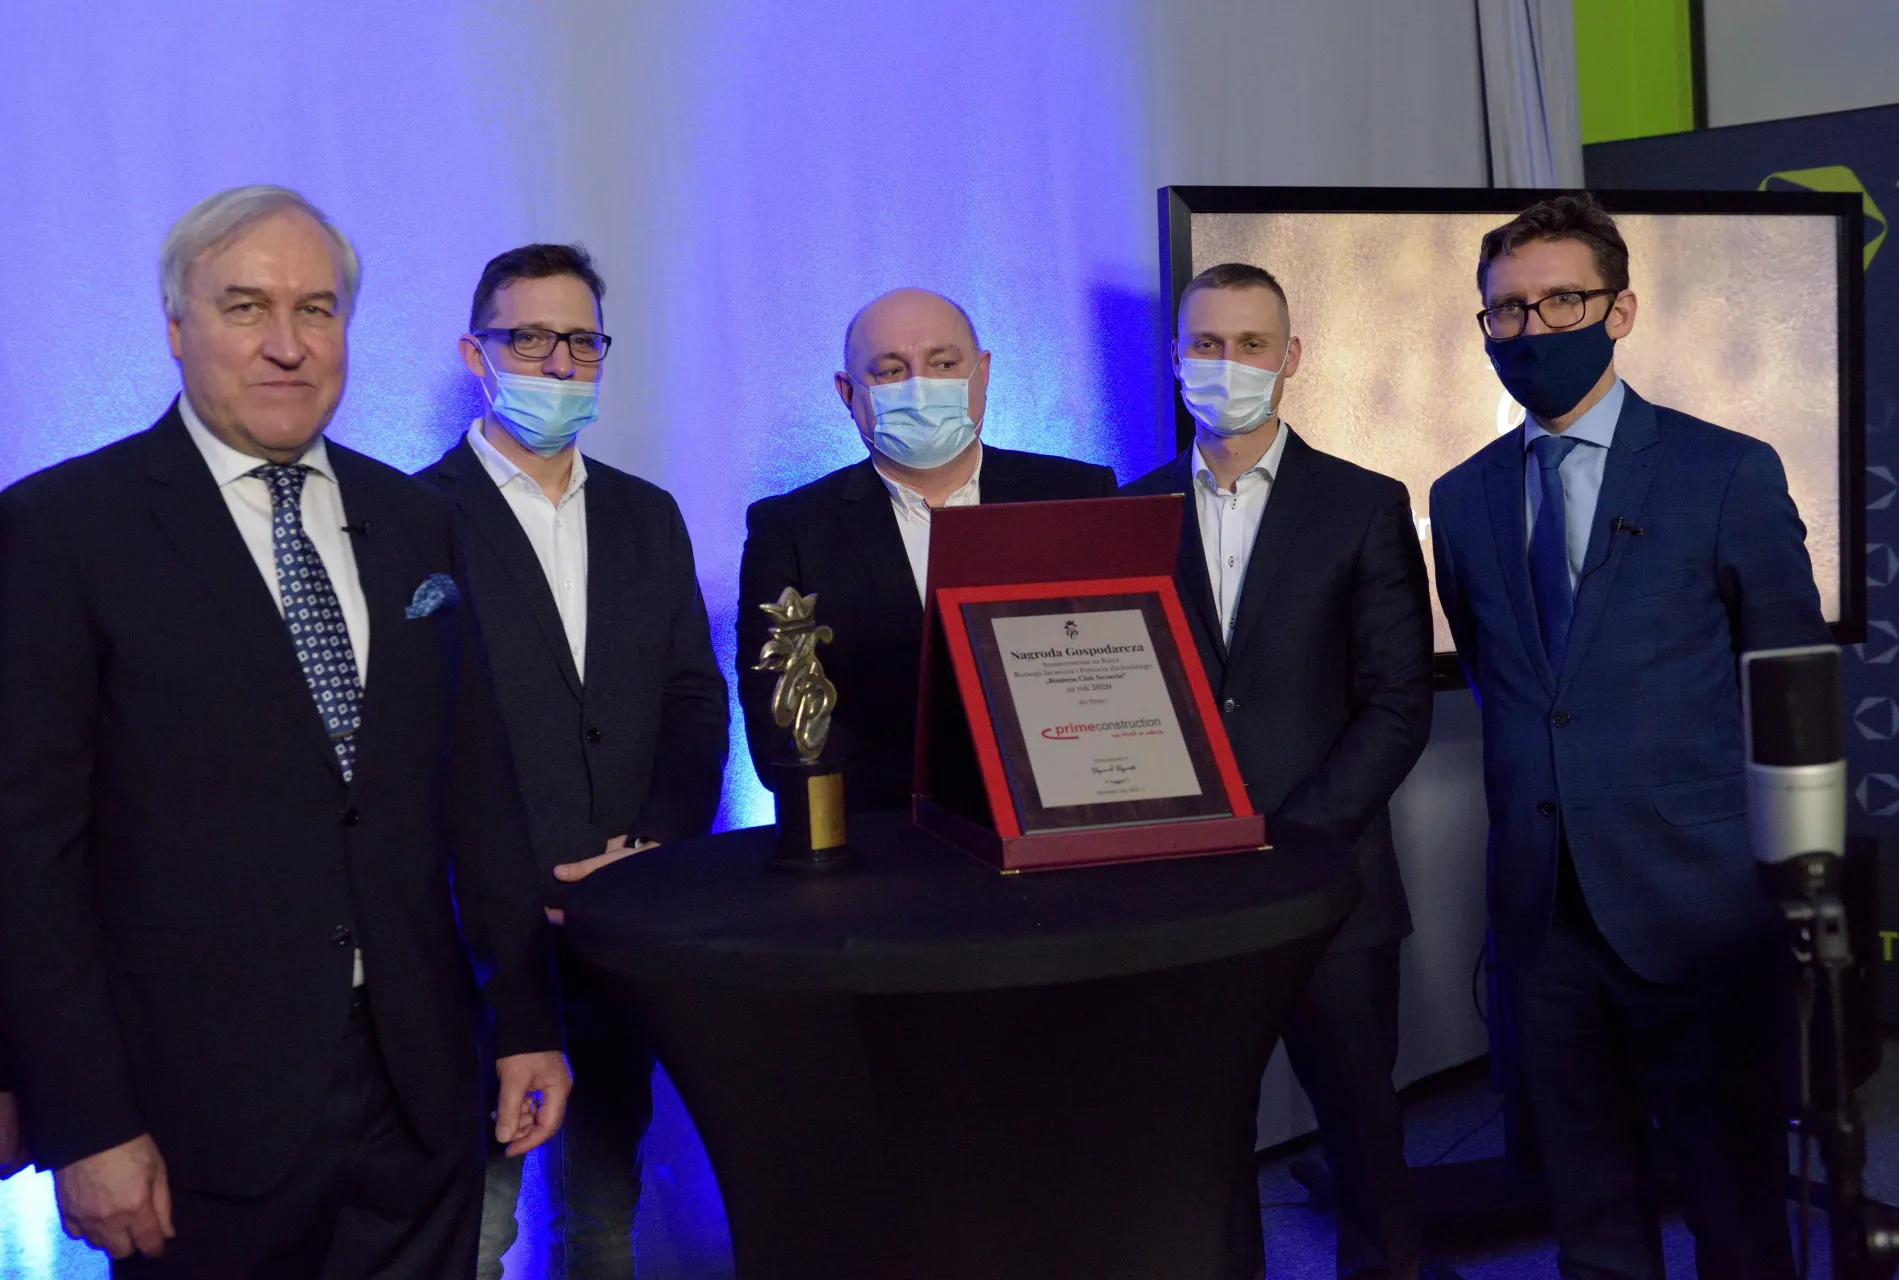 Prime Construction laureatem NAGRODY GOSPODARCZEJ 2020 przyznawanej przez Business Club Szczecin